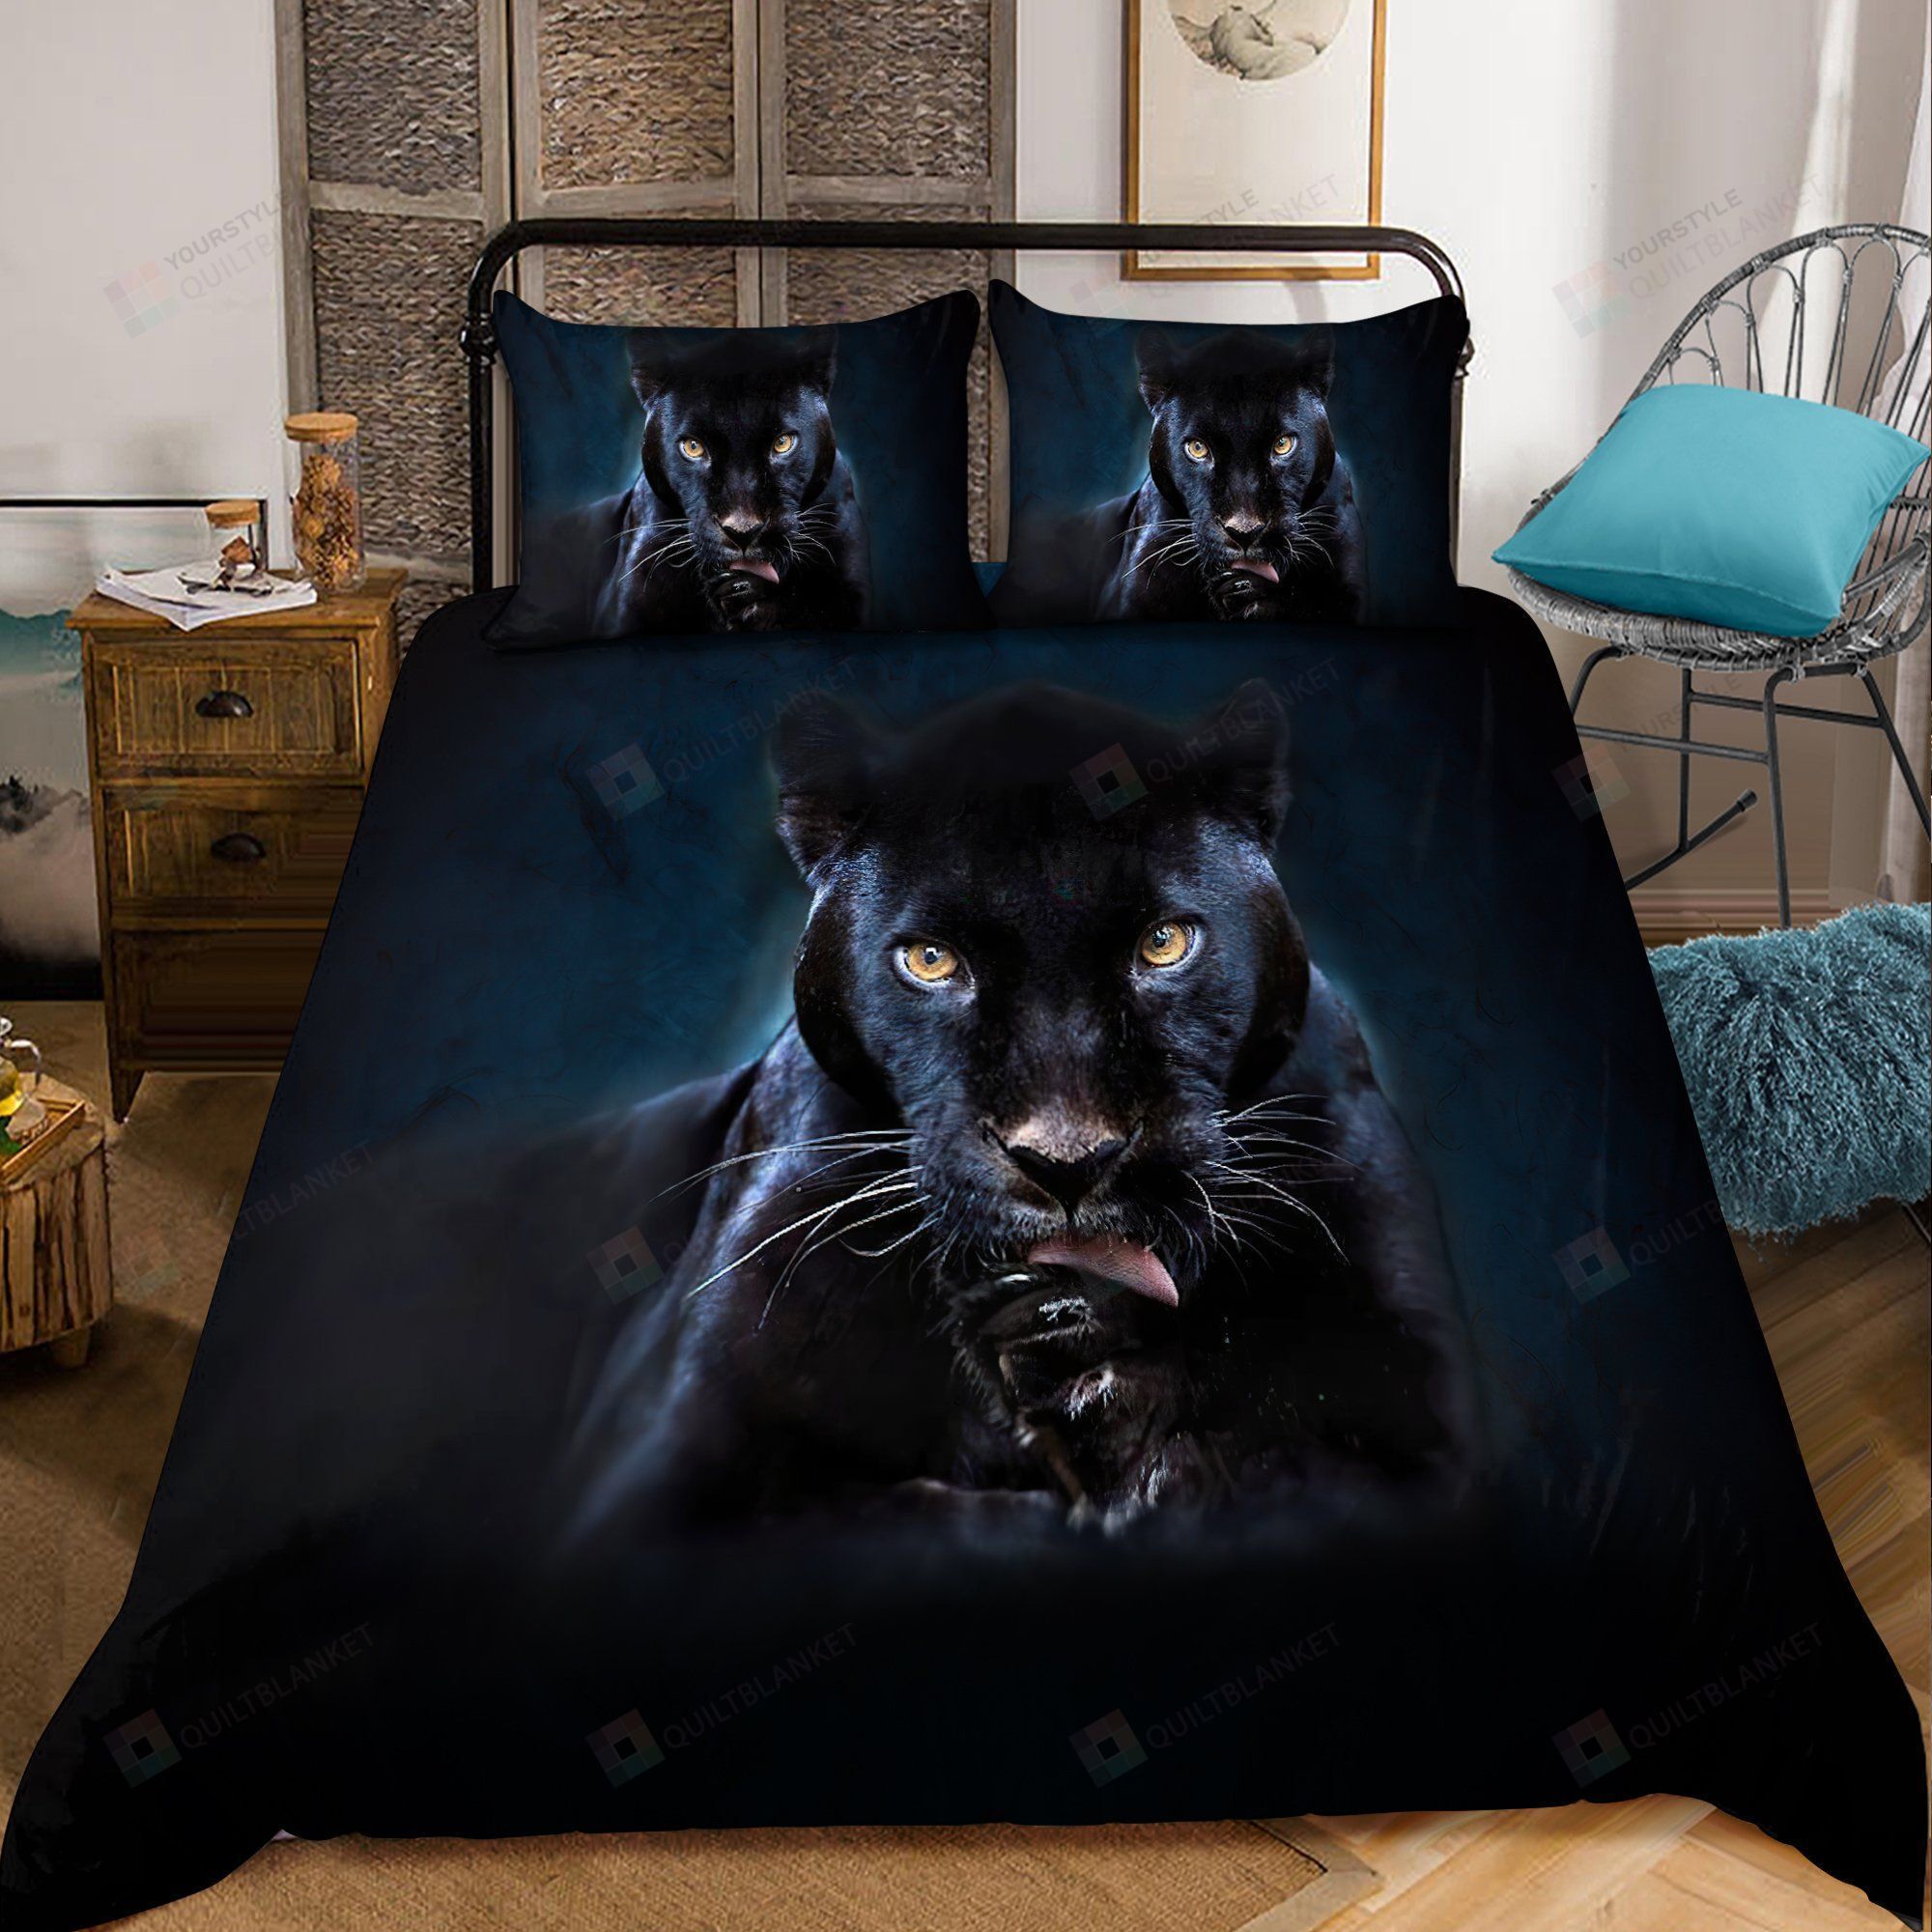 The Black Panther Bedding Set Bed Sheets Spread Comforter Duvet Cover Bedding Sets